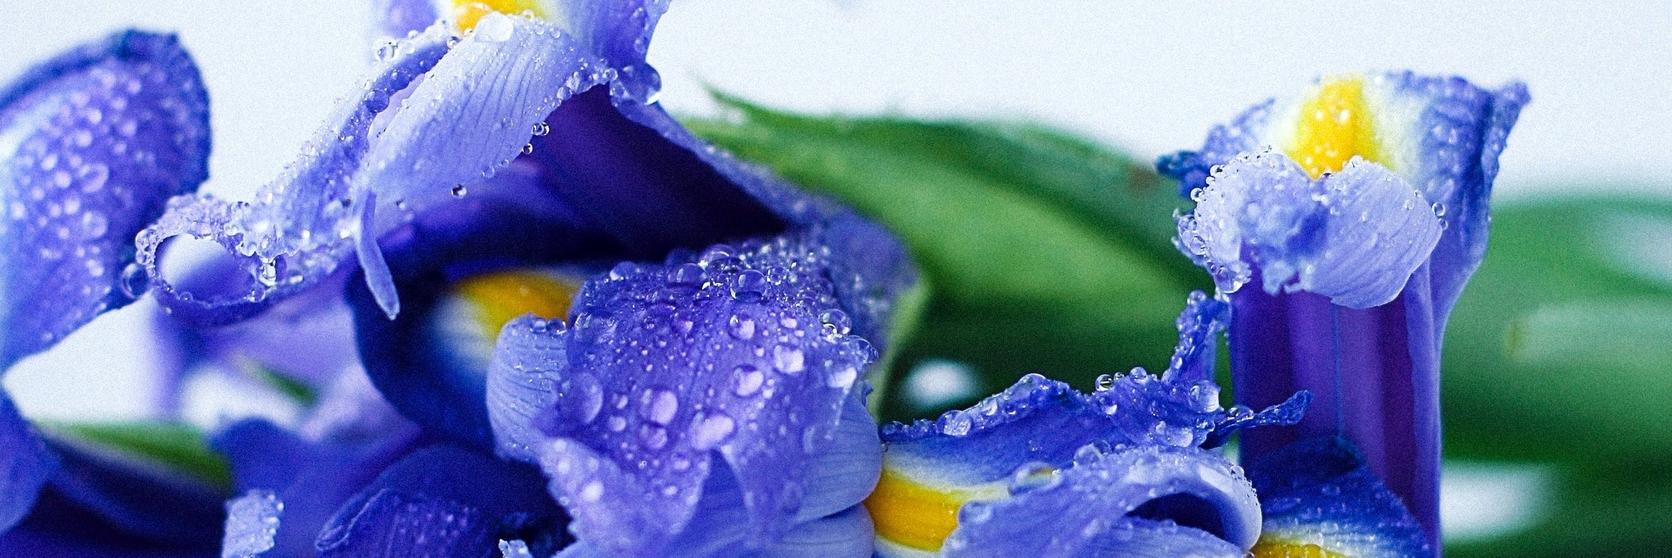 blue-irises